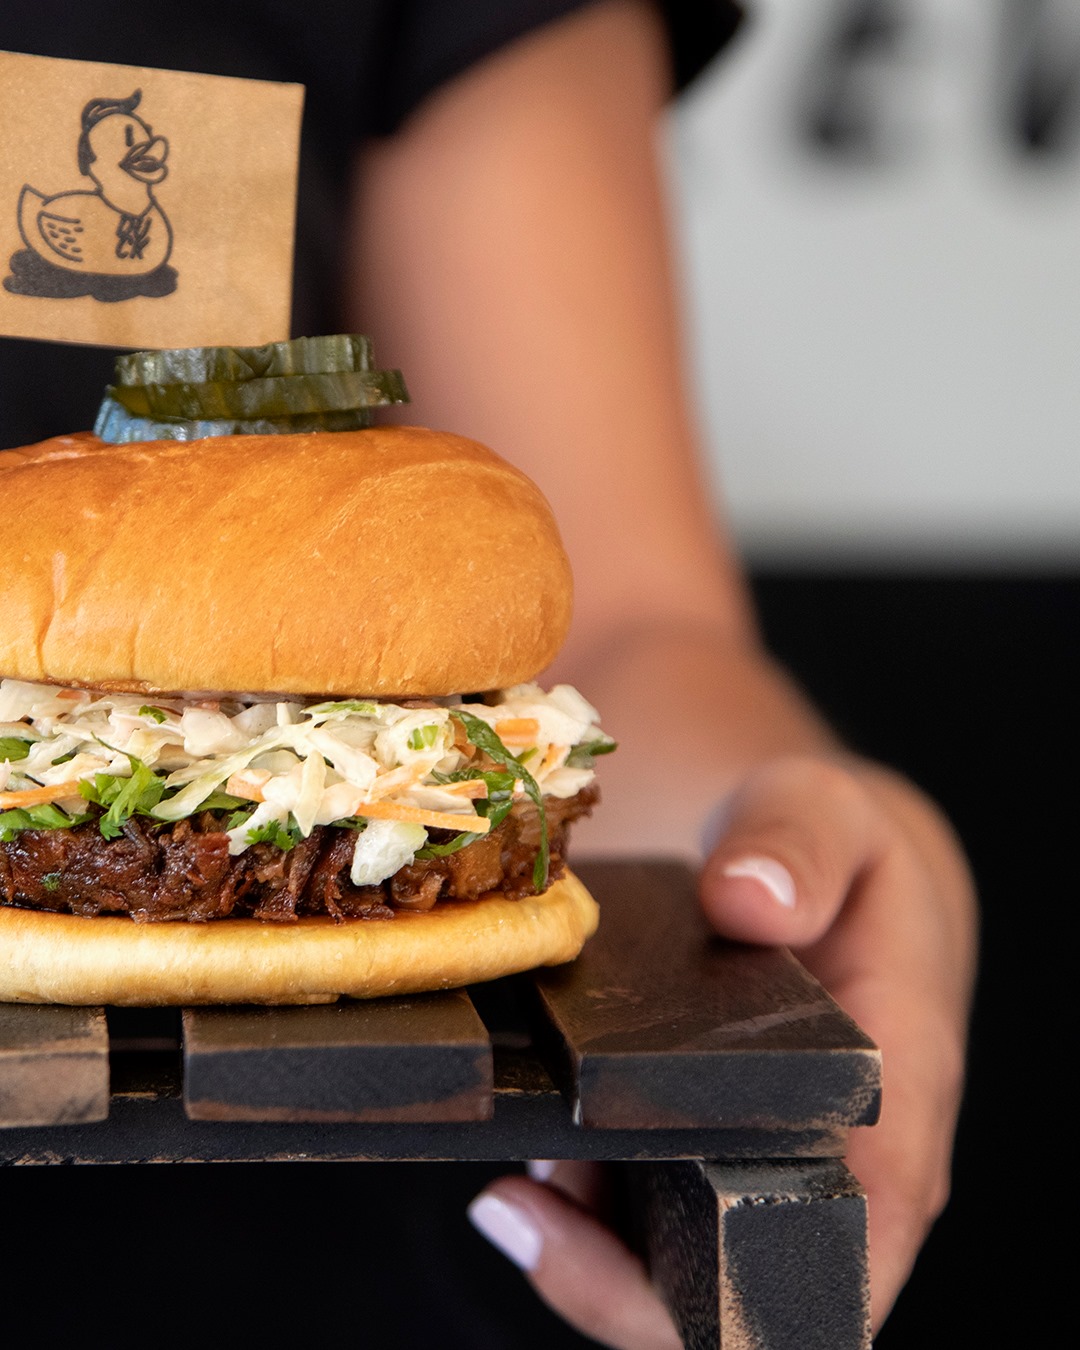 Είσαι έτοιμος να δοκιμάσεις το πιο ανατρεπτικό burger της πόλης;